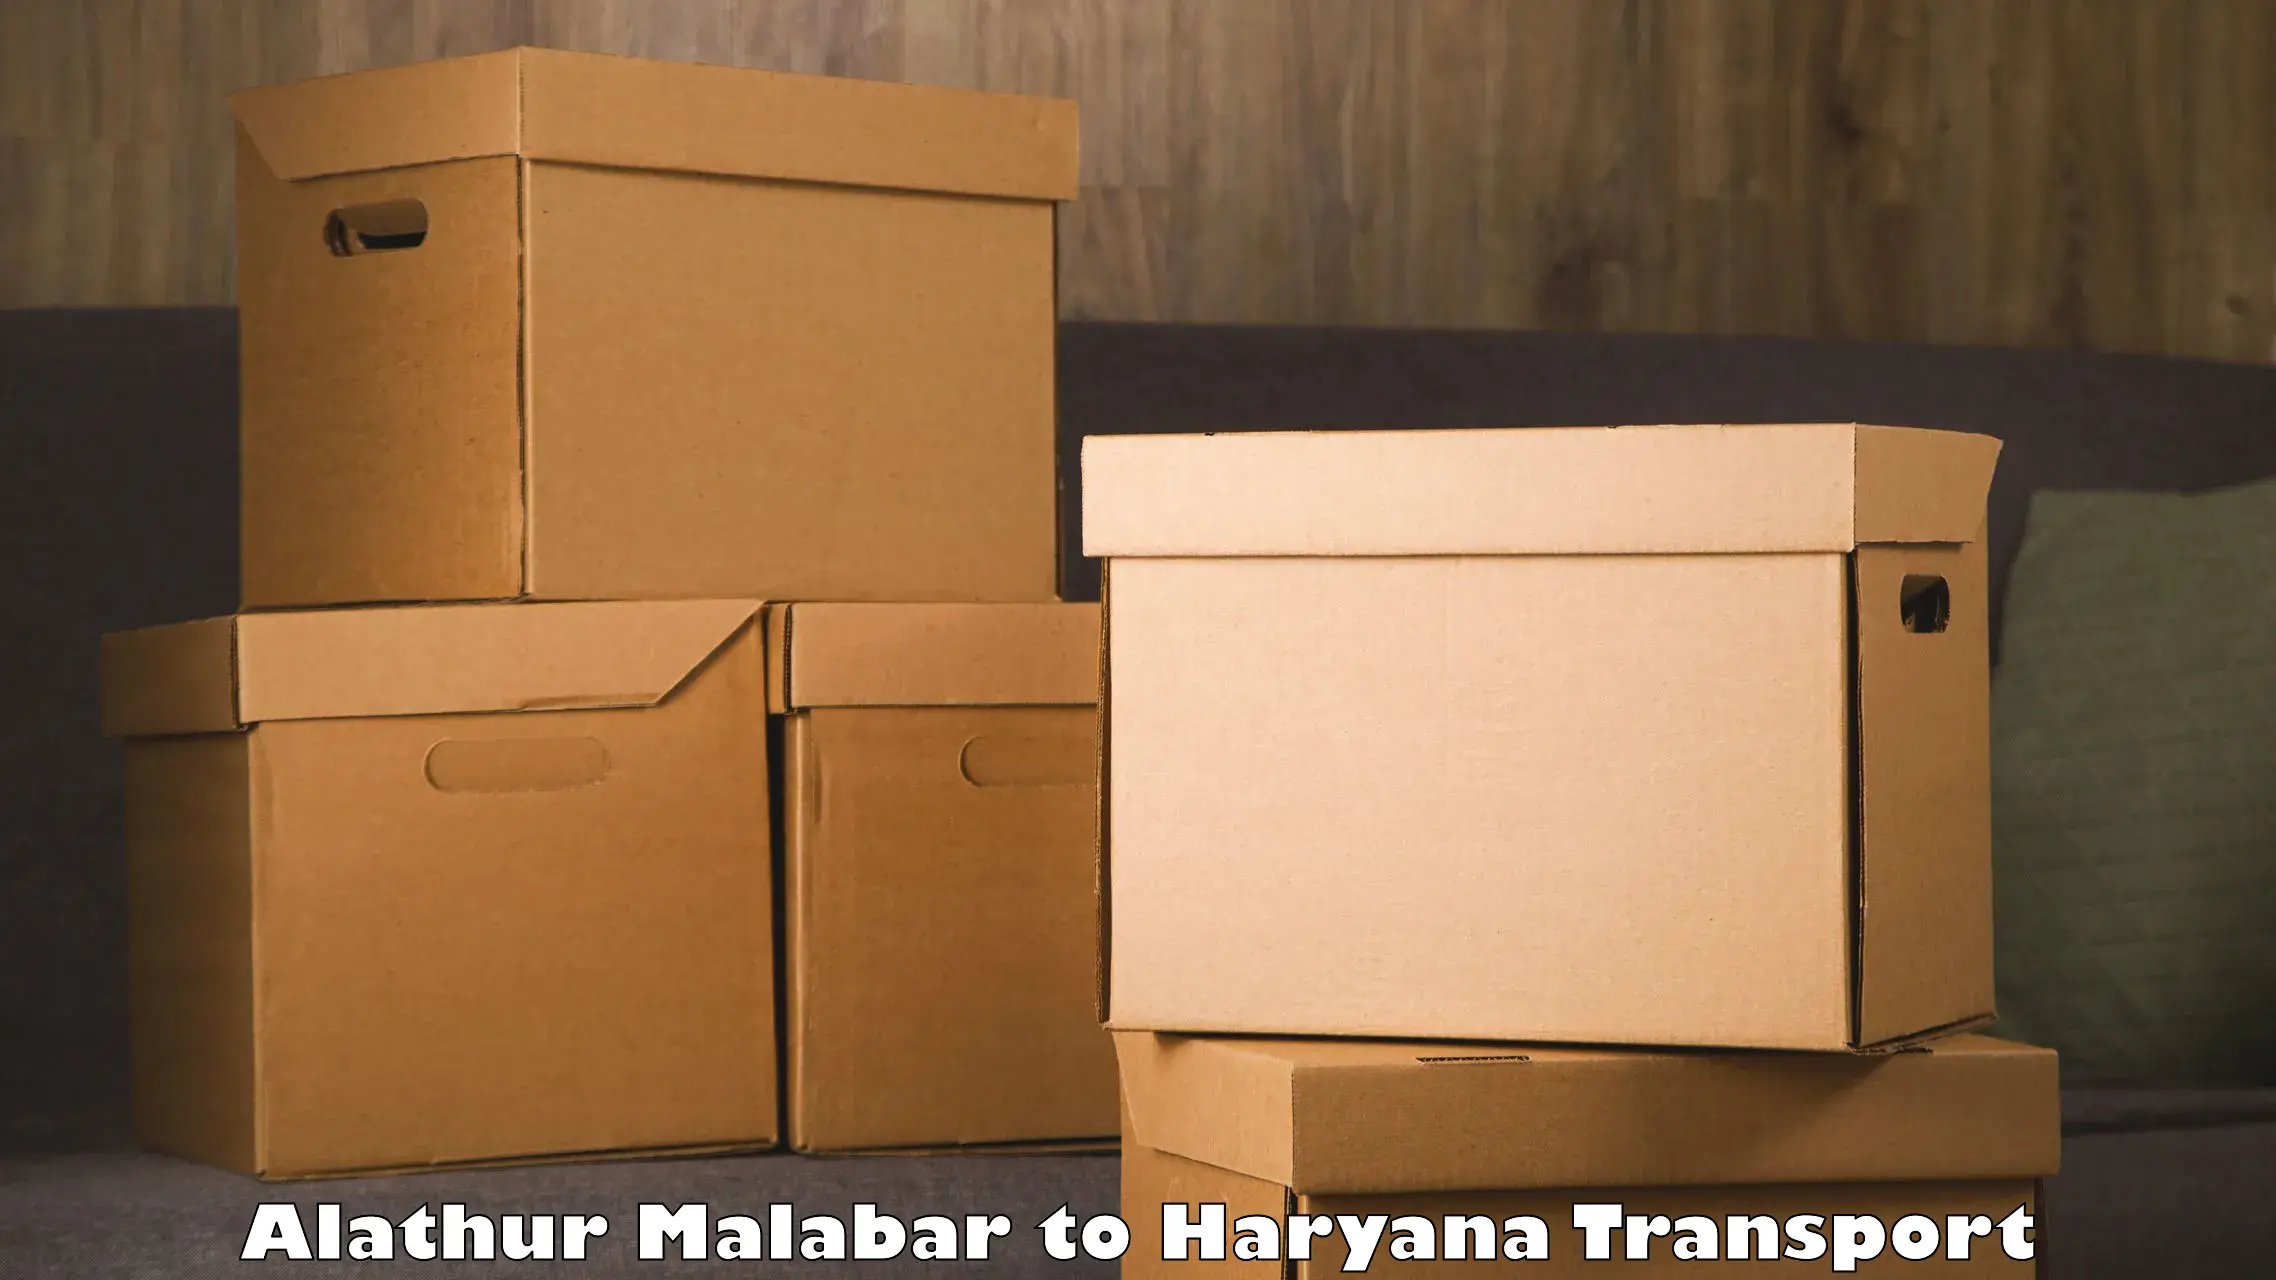 Furniture transport service Alathur Malabar to Panipat